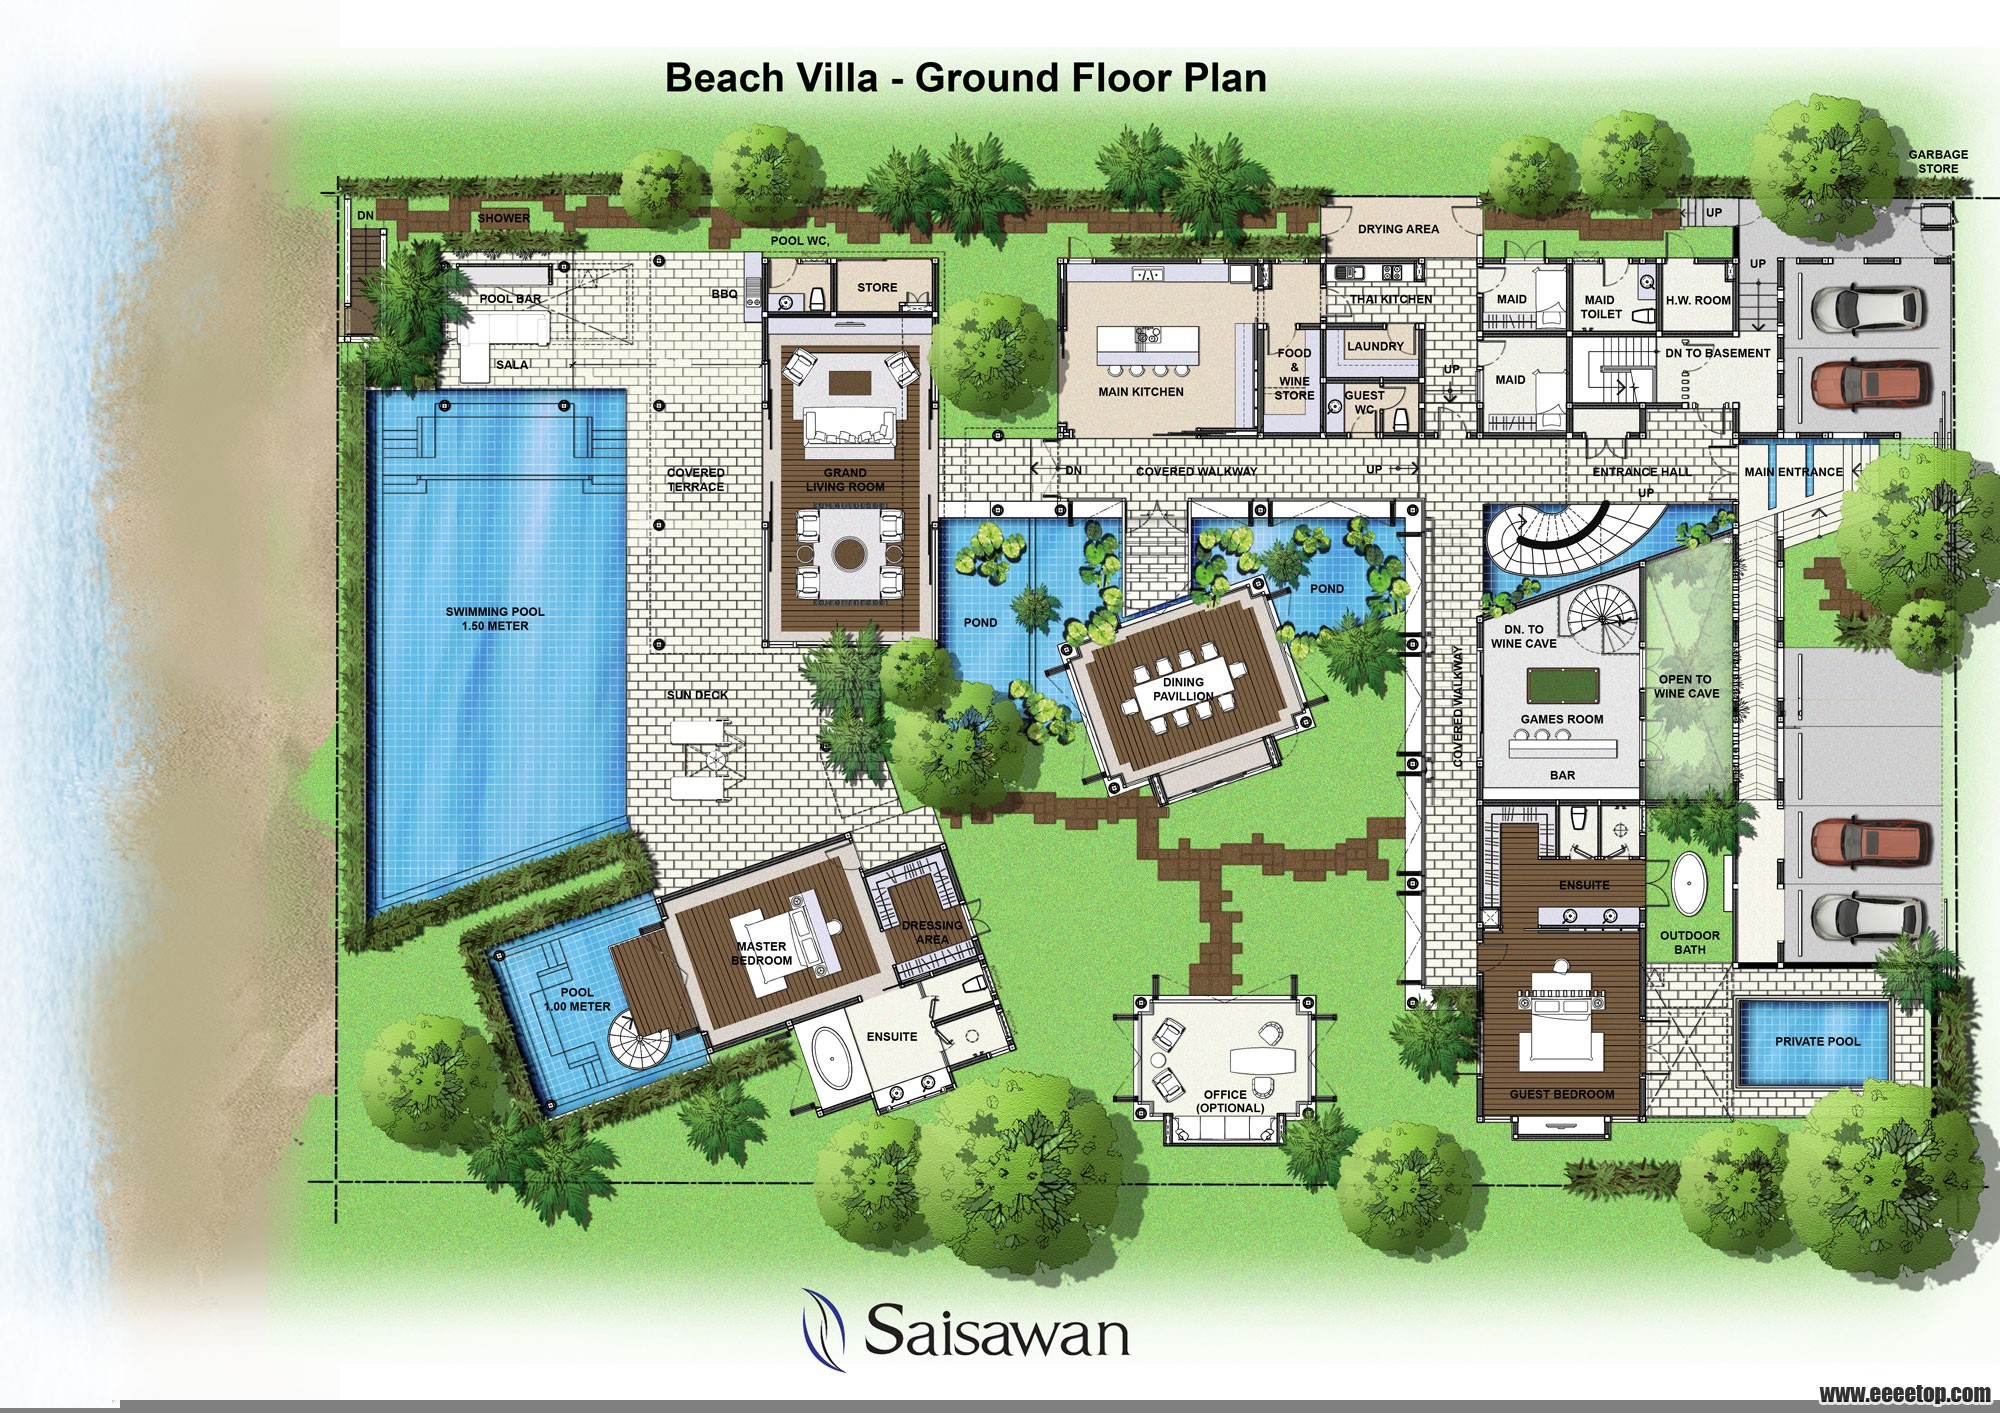 Beach-Villas-Ground-Floor-Plan.jpg